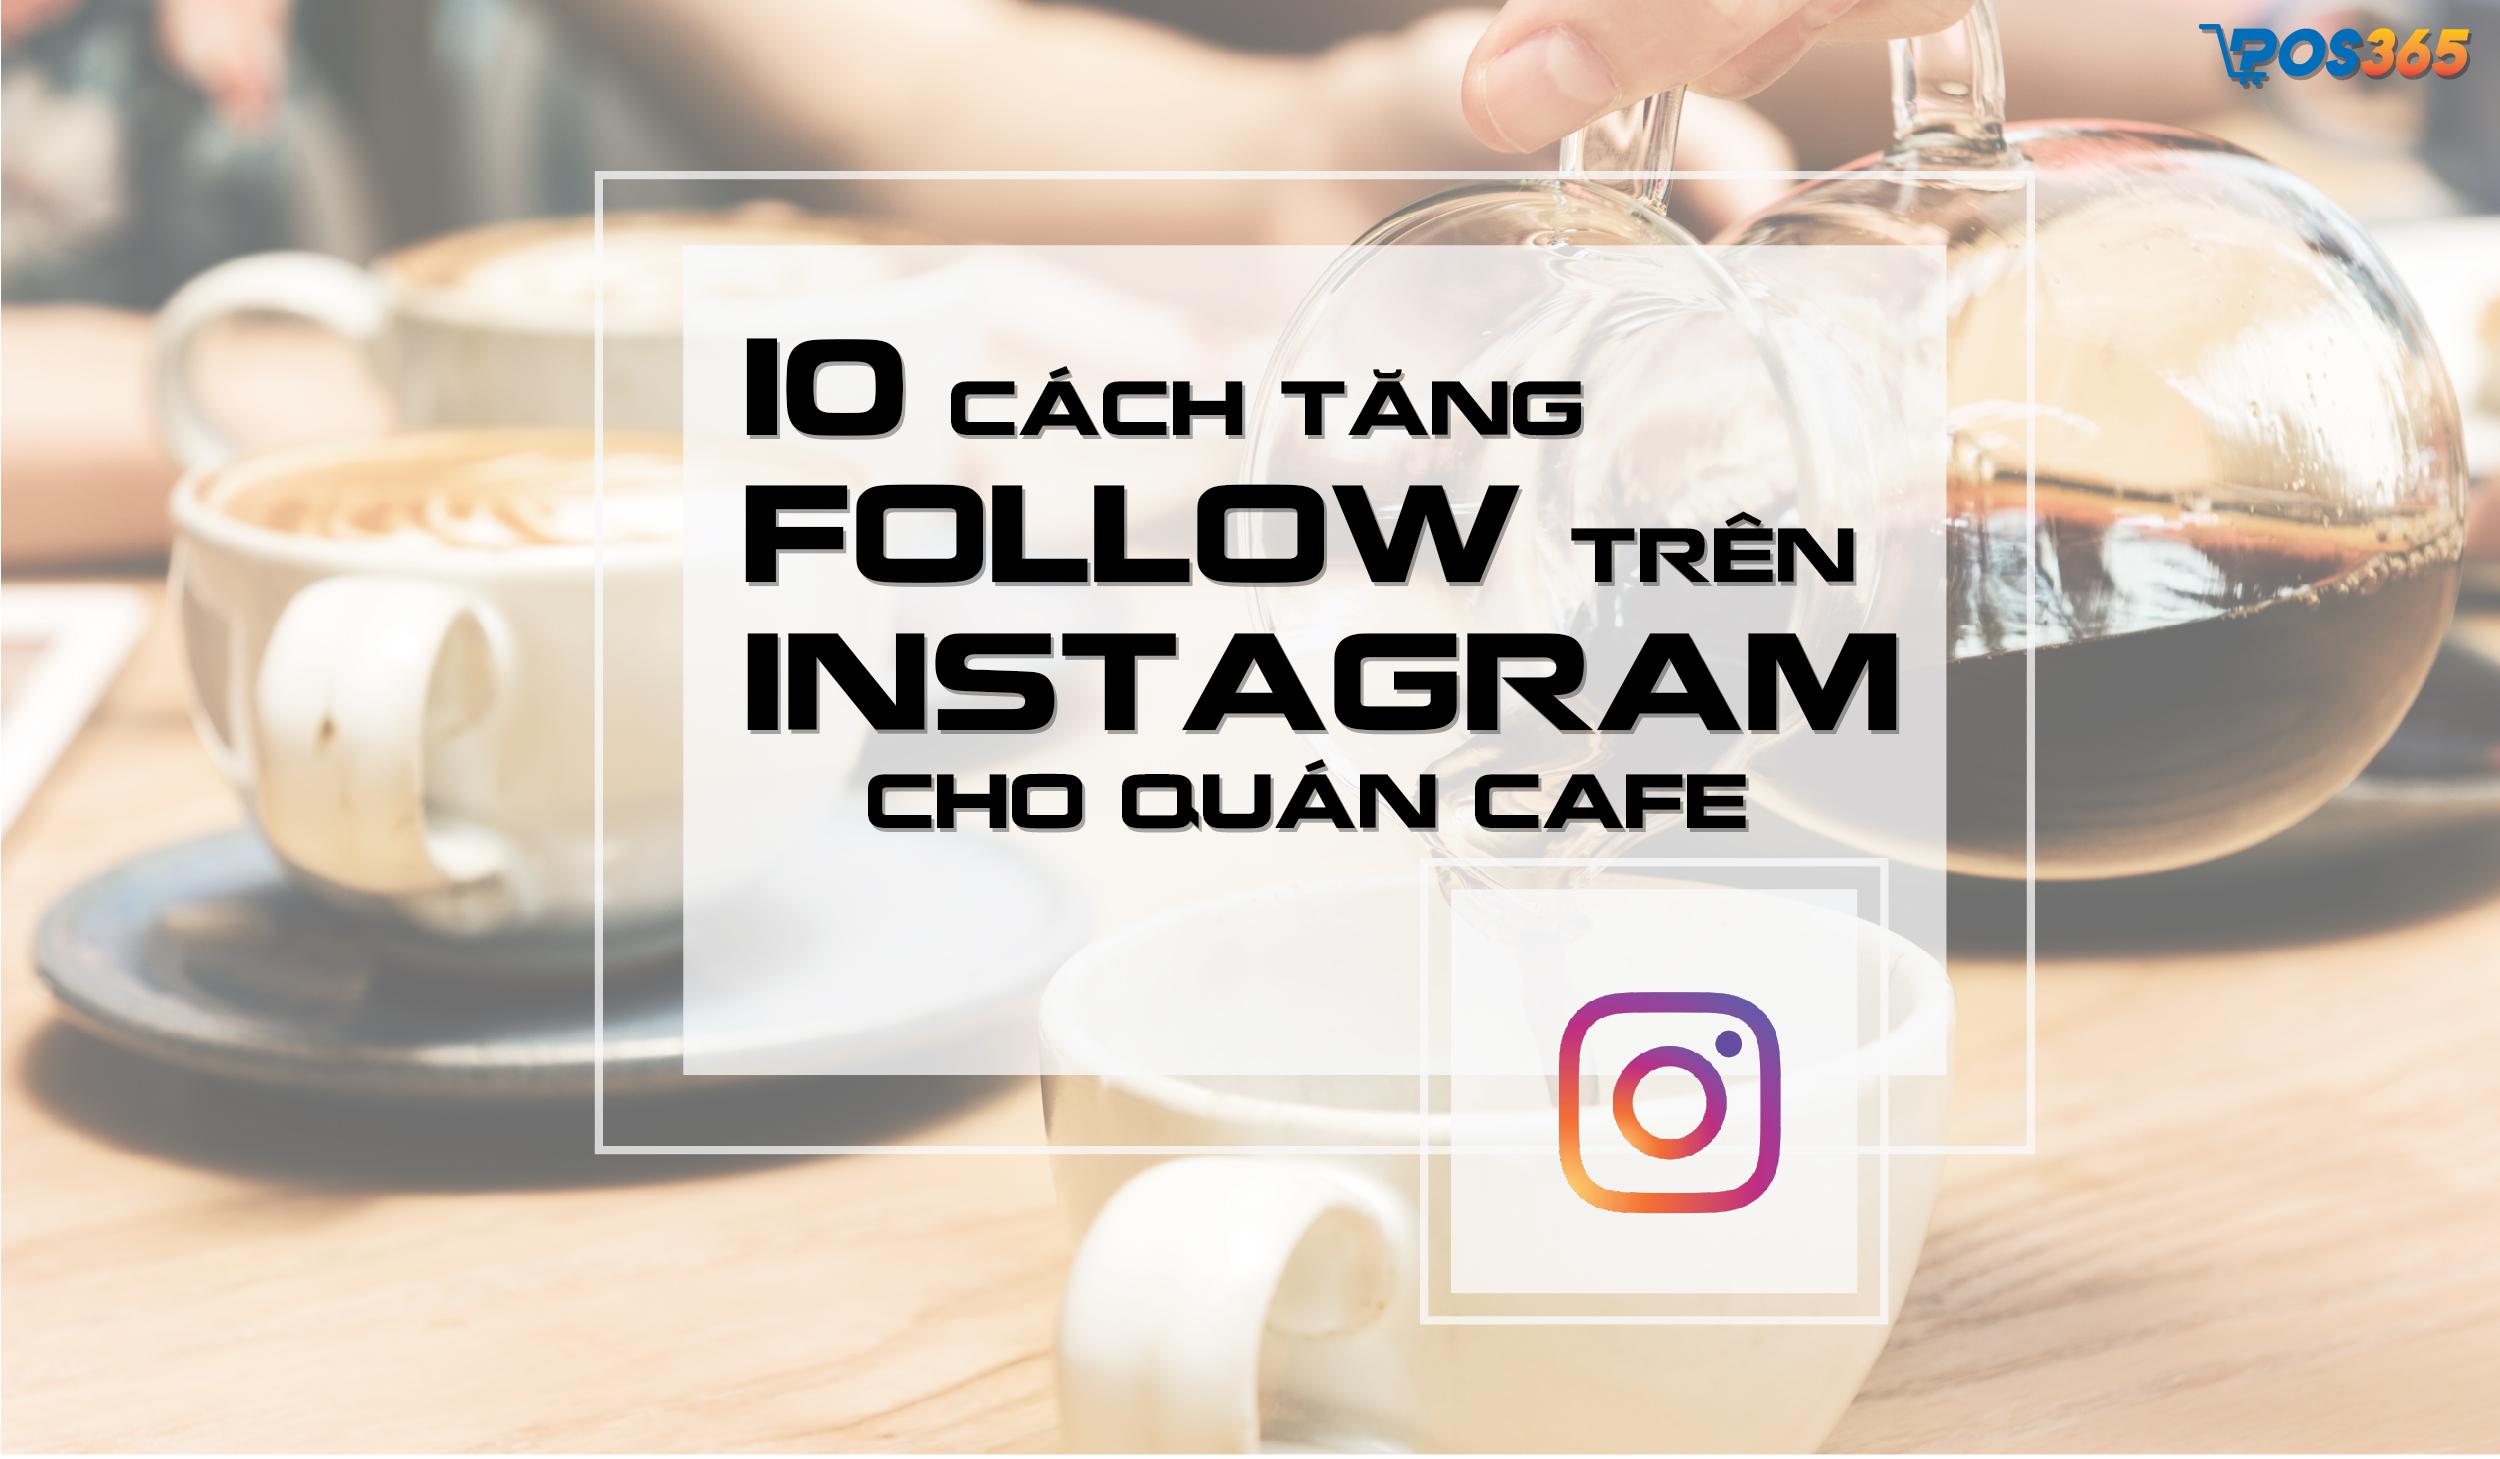 10 cách tăng follow trên Instagram cho quán cafe